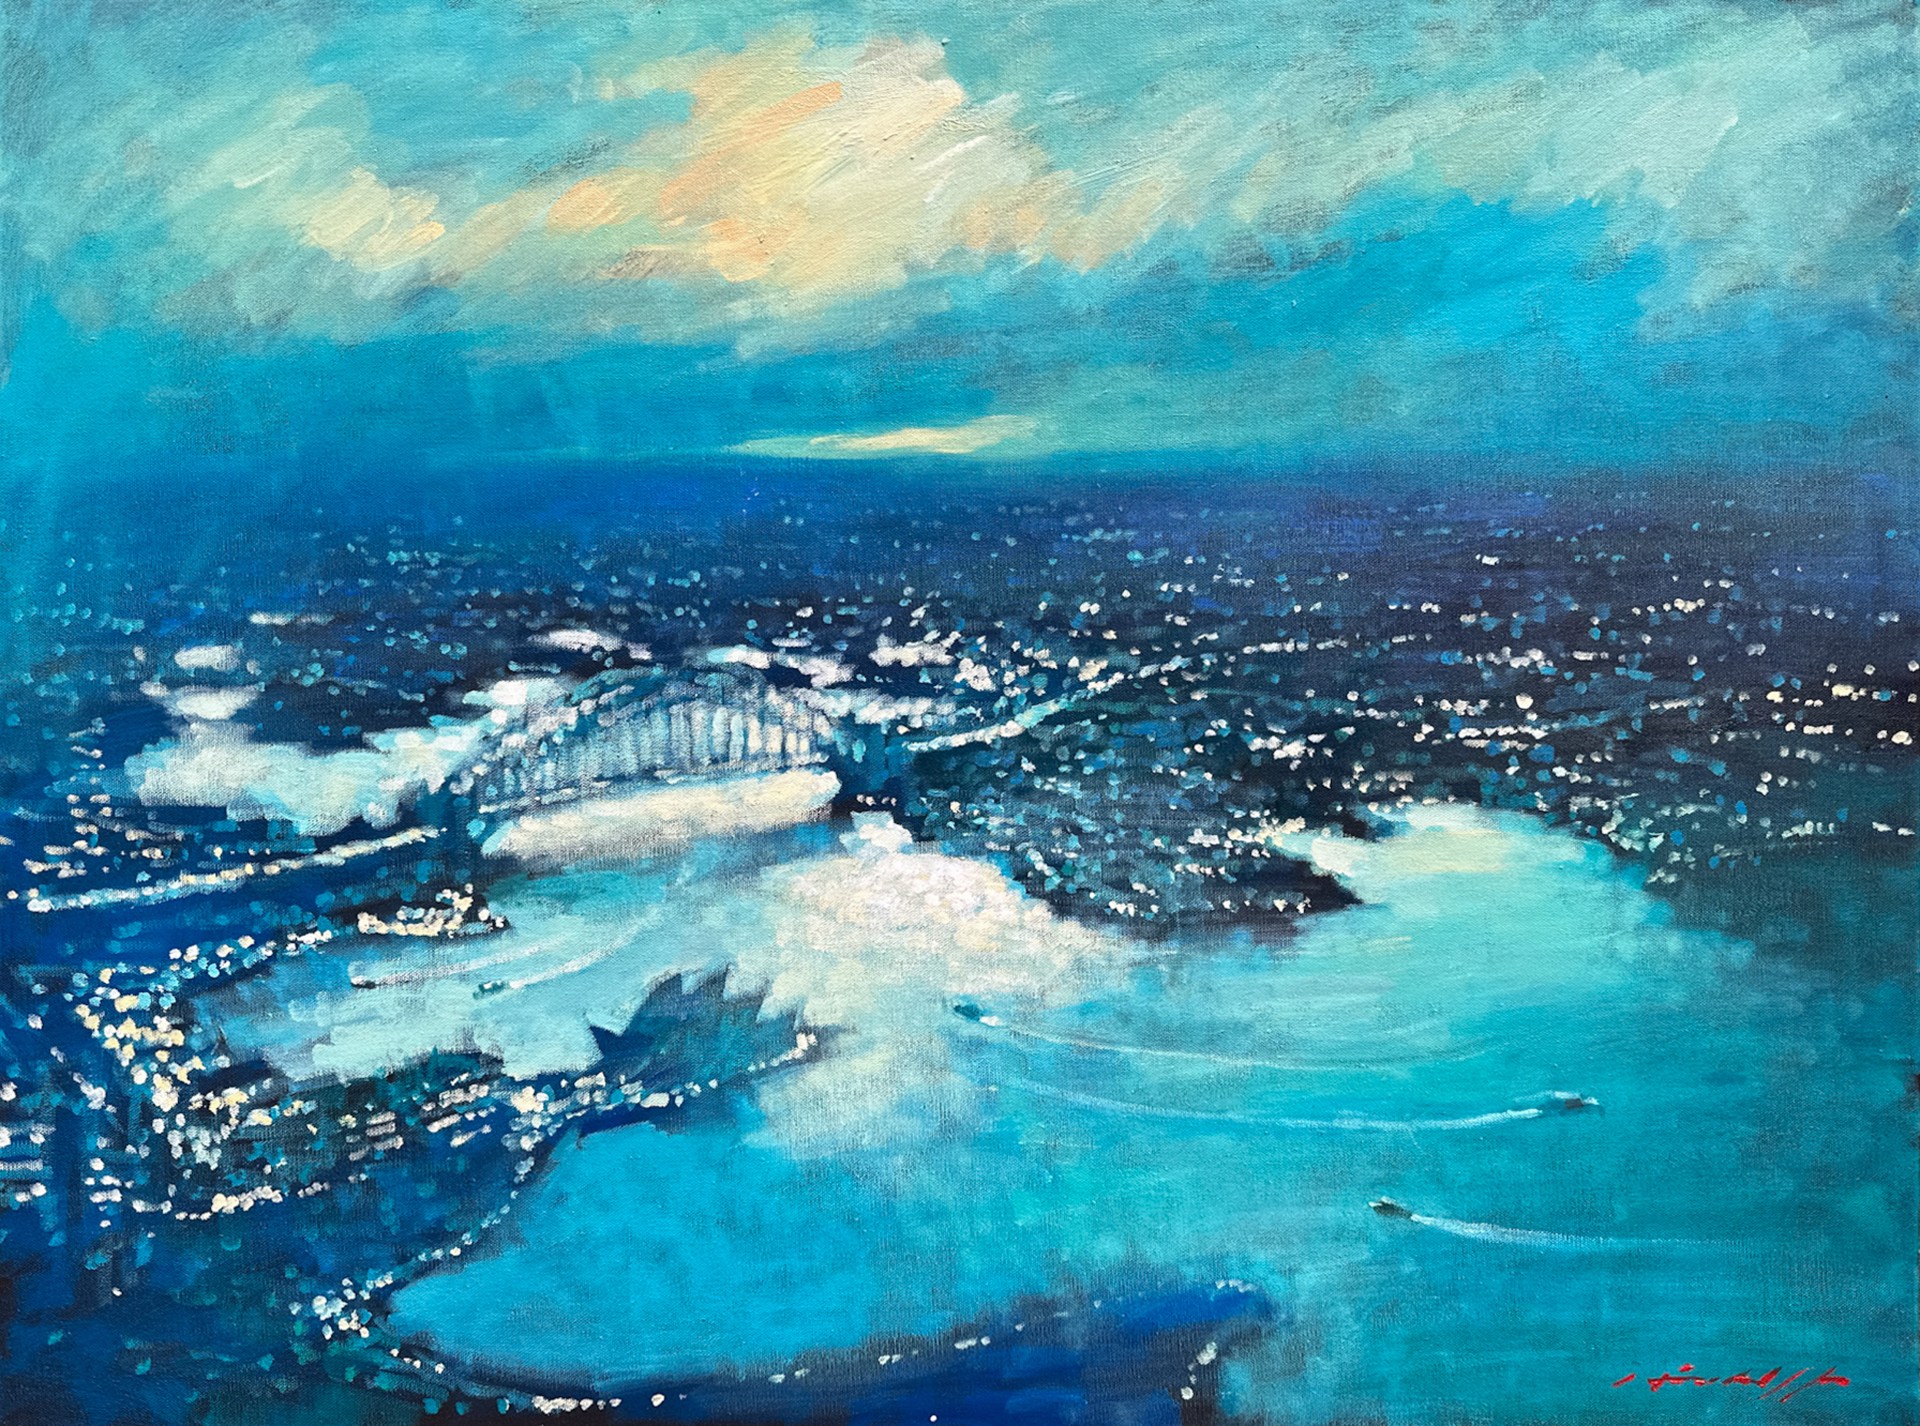 Aerial Blues, Sydney by David Hinchliffe